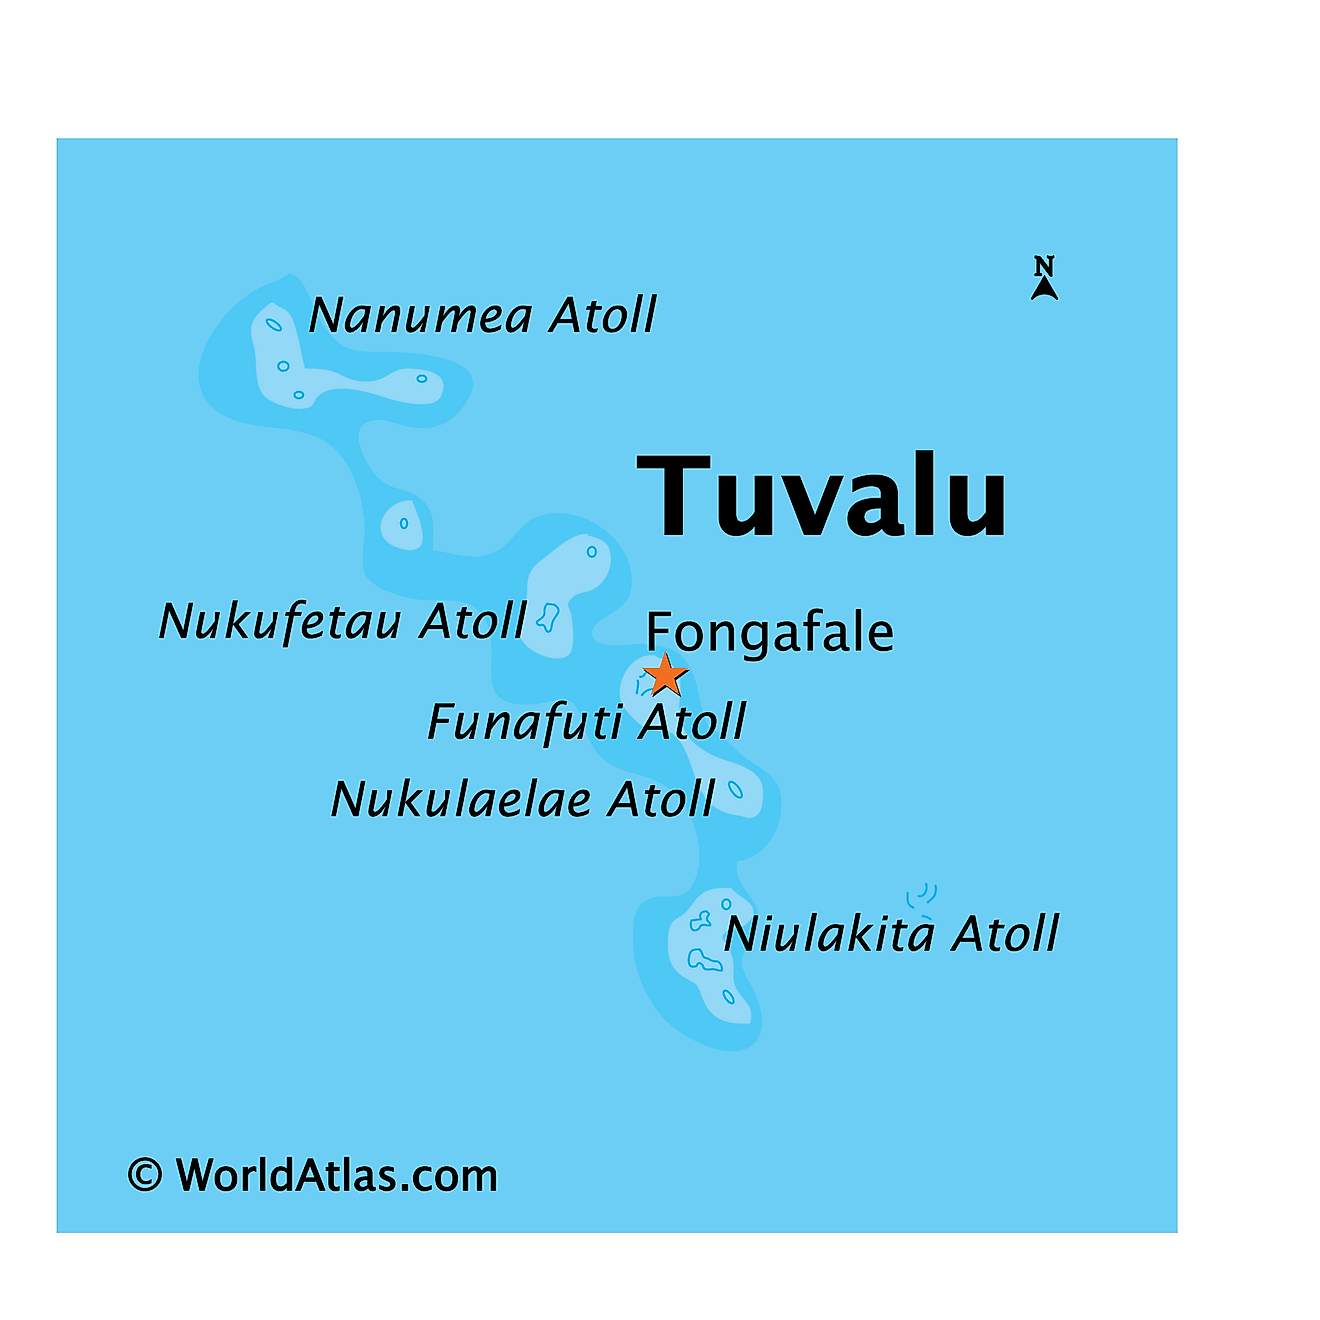 Bản đồ vật lý của Tuvalu